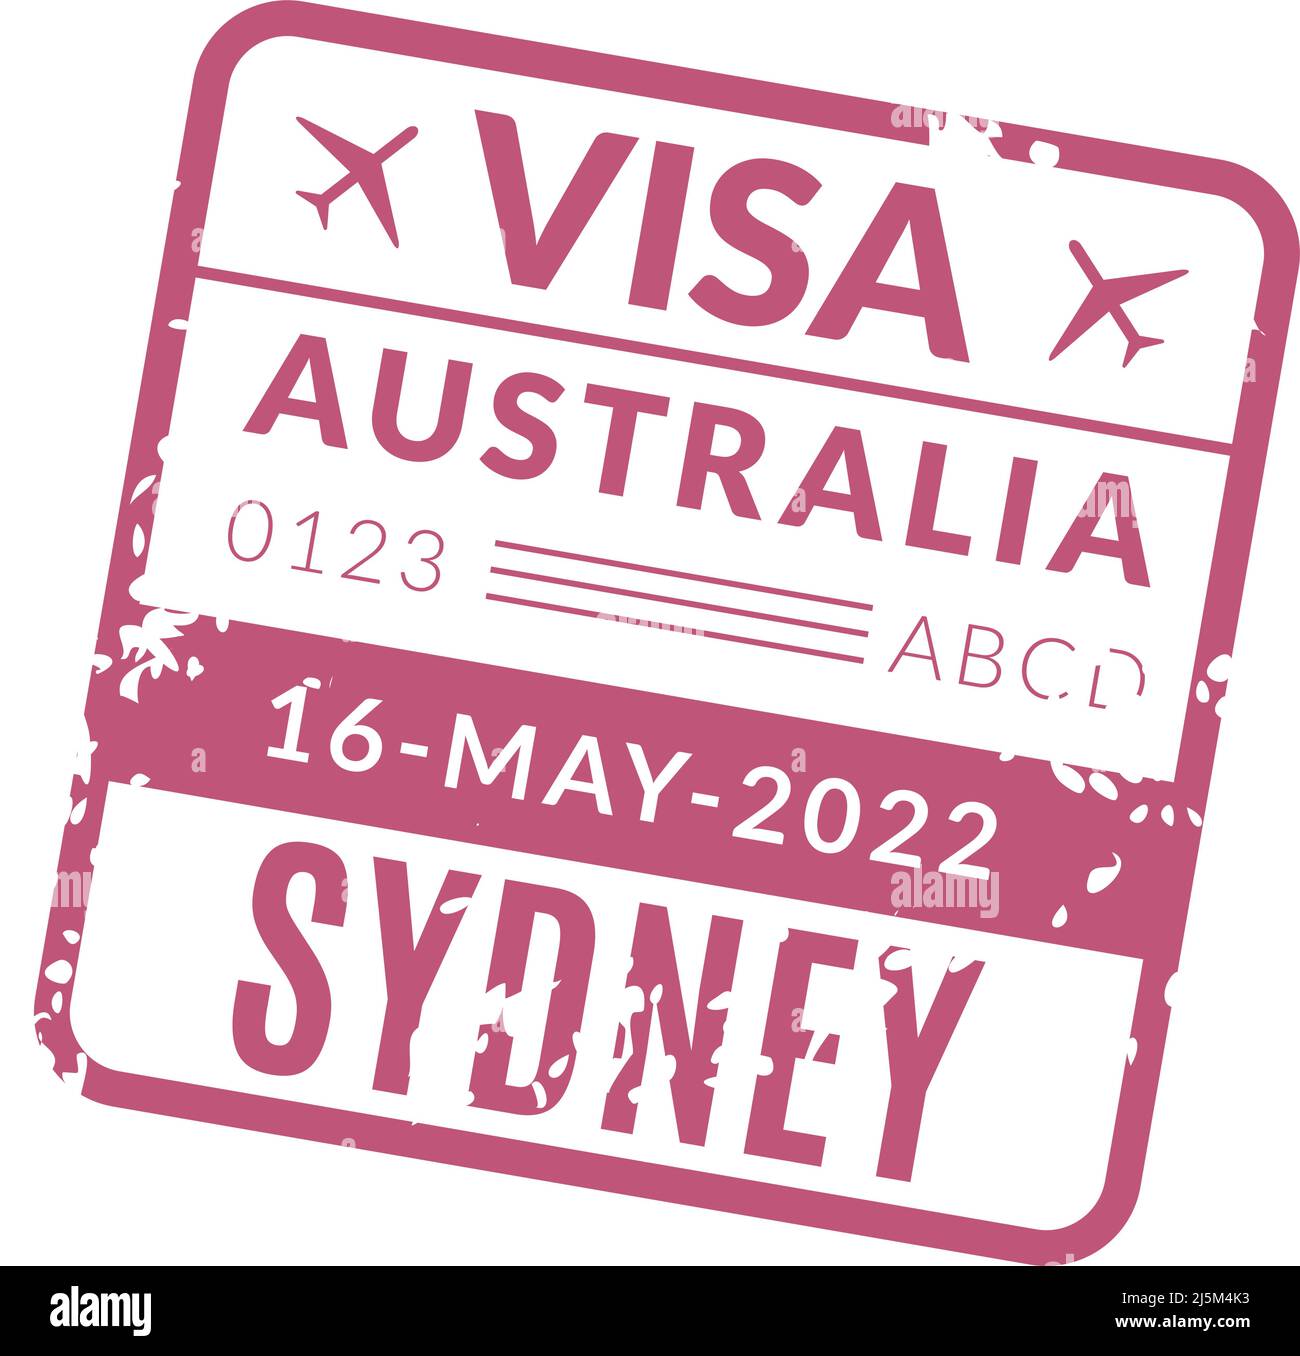 Australie visa avec texture grunge. Timbre de voyage pour passeport  touristique Image Vectorielle Stock - Alamy